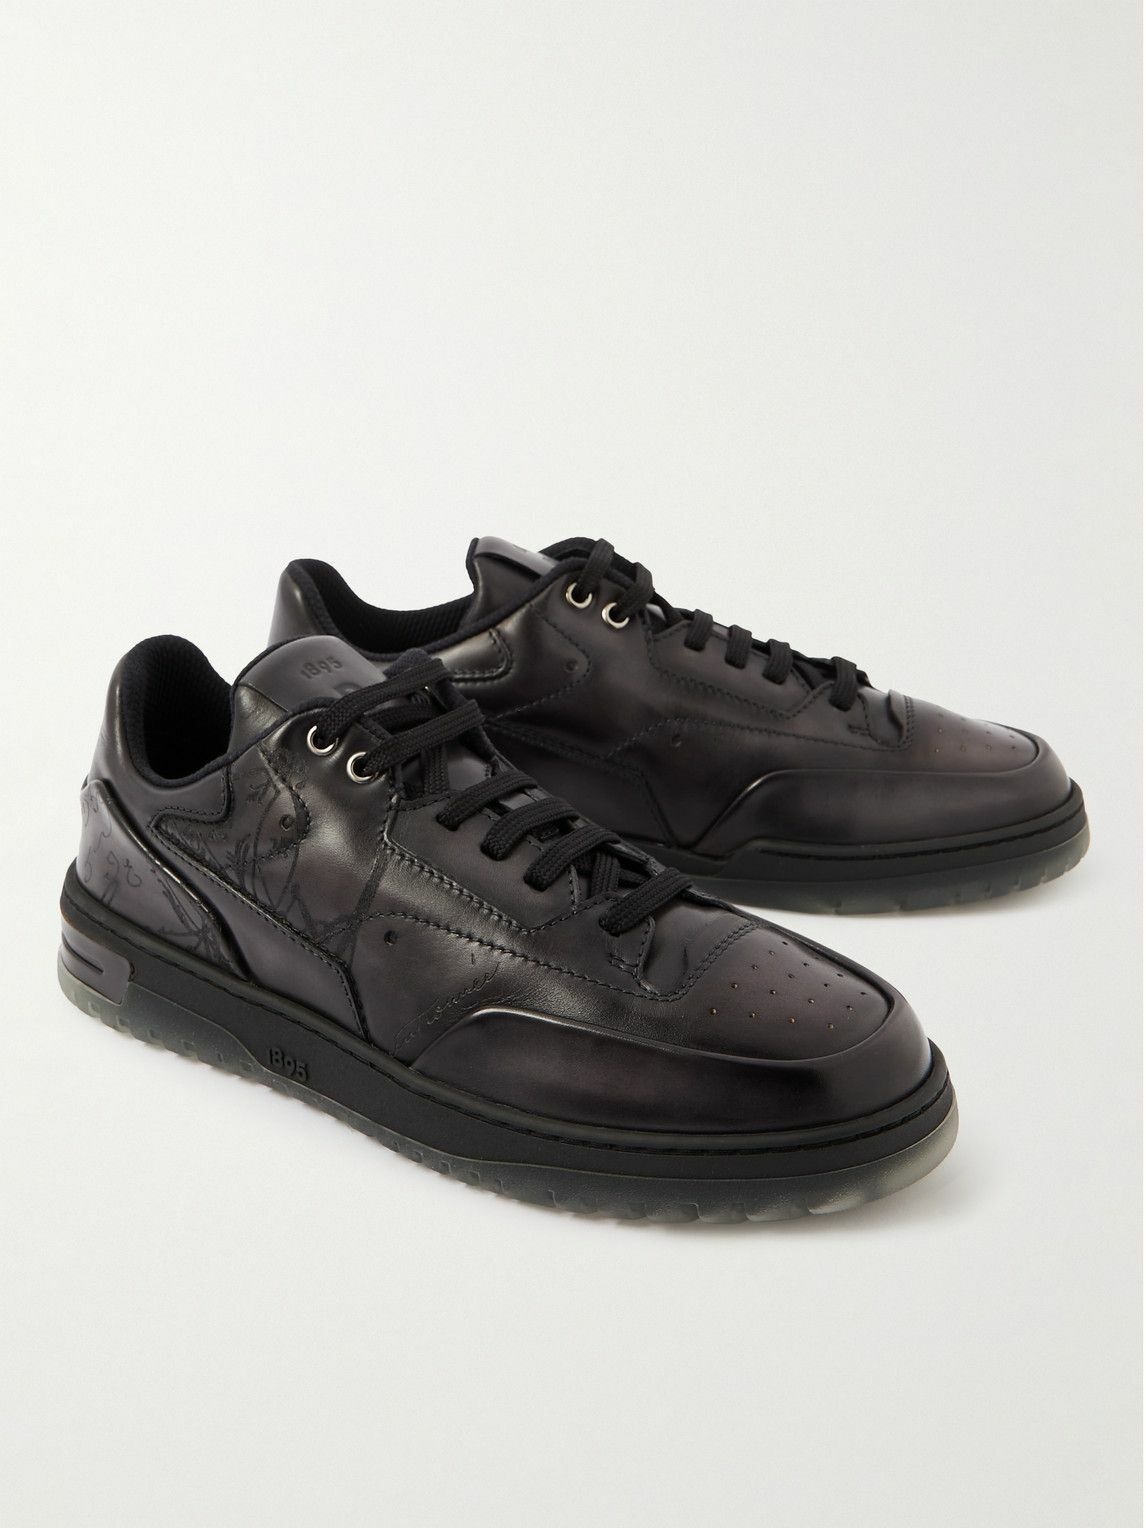 Berluti - Playoff Scritto Venezia Leather Sneakers - Black Berluti